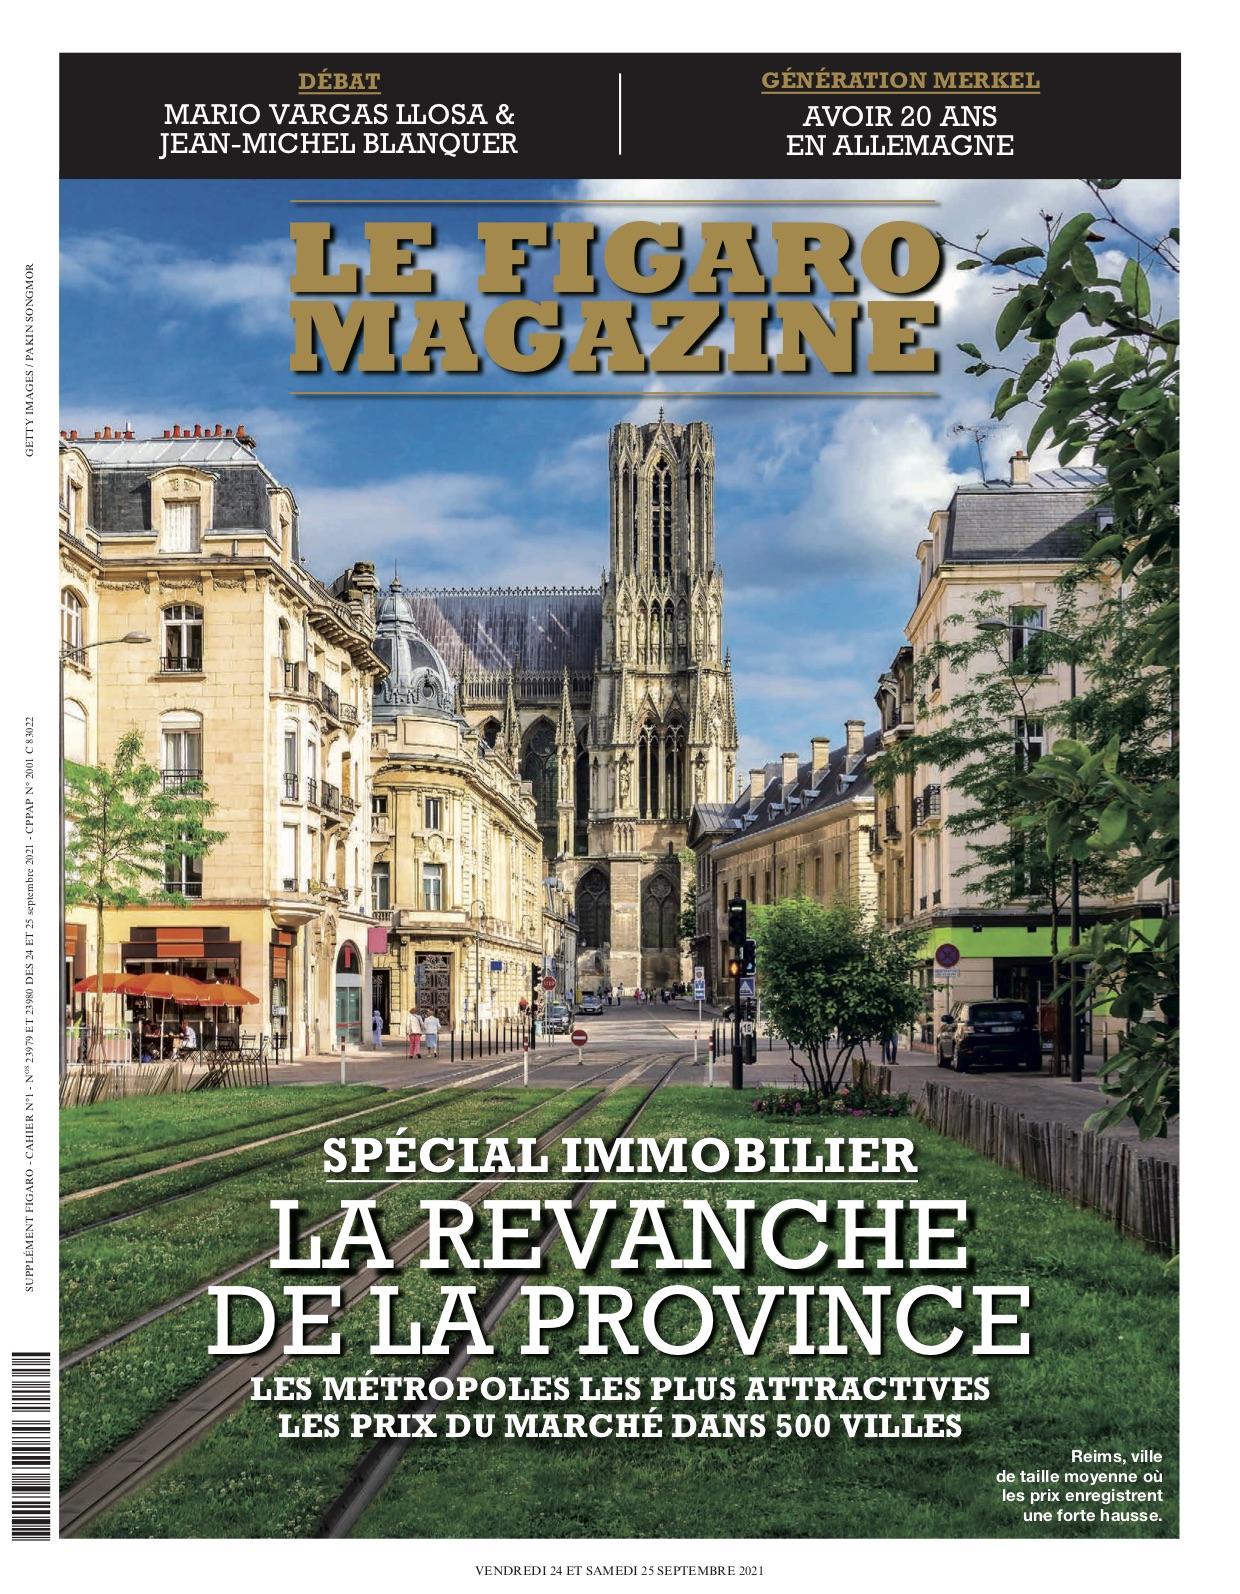 Le Figaro Magazine - La Revanche de la Province